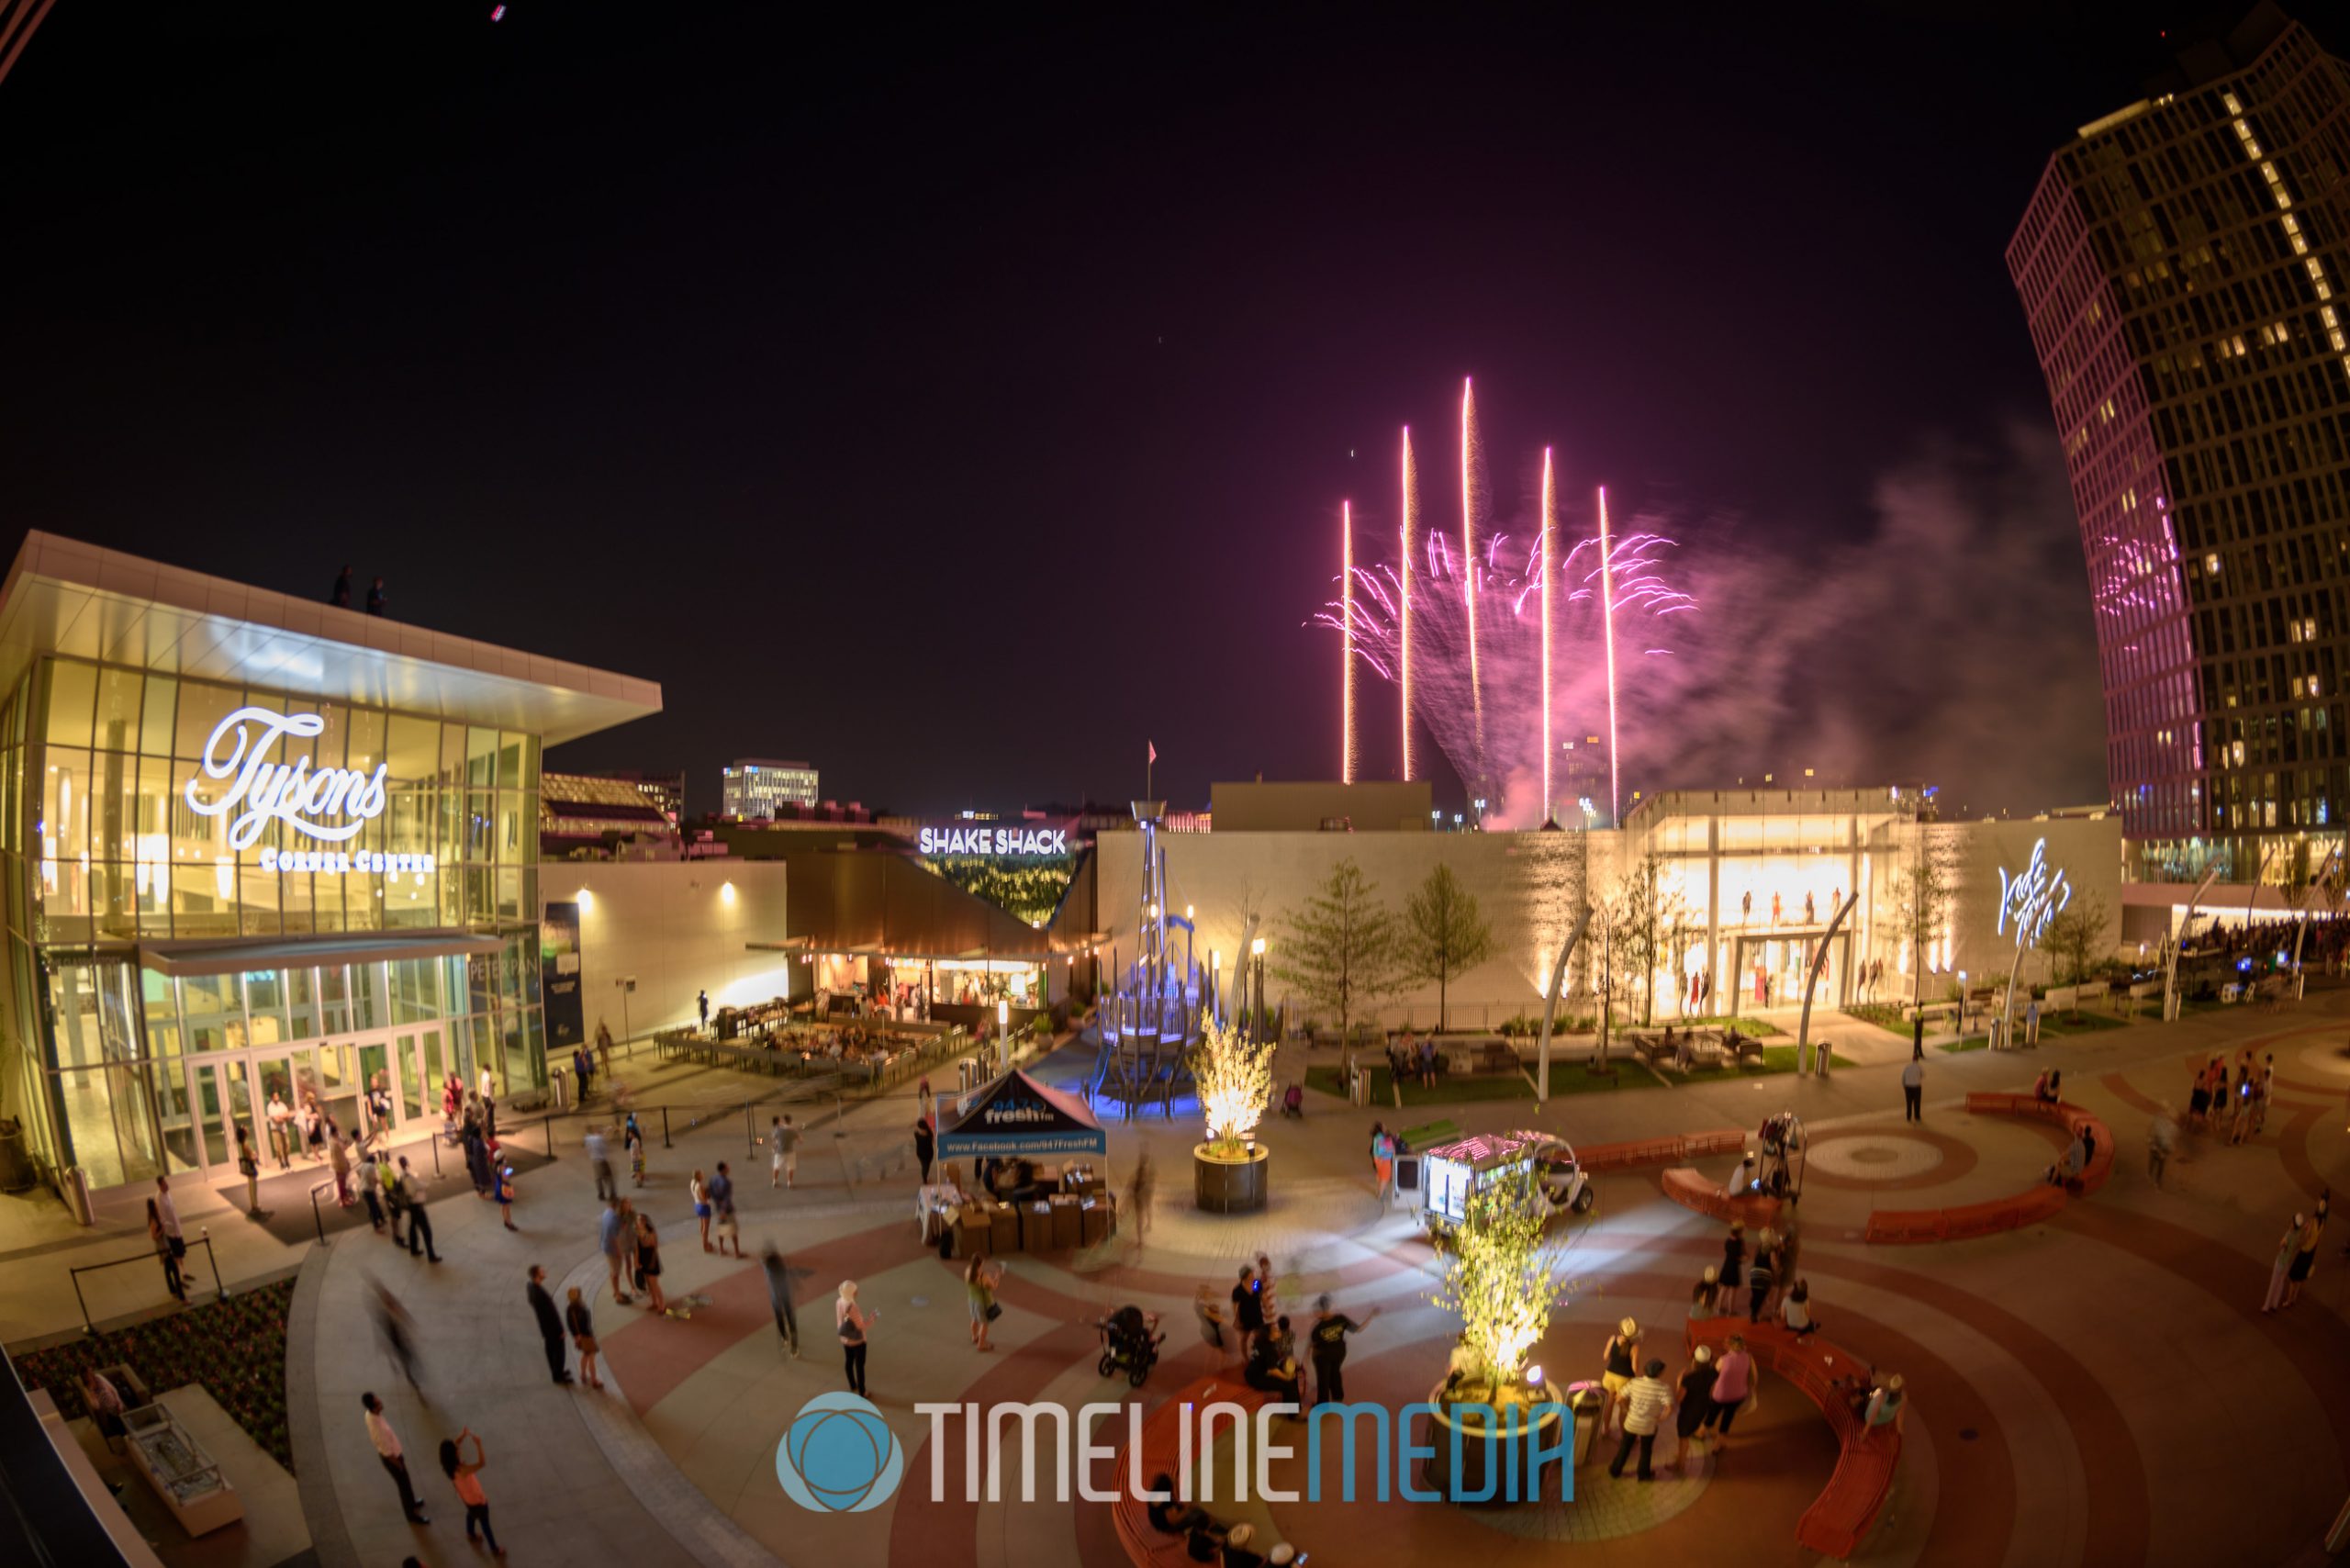 Fireworks over the Plaza ©TimeLine Media